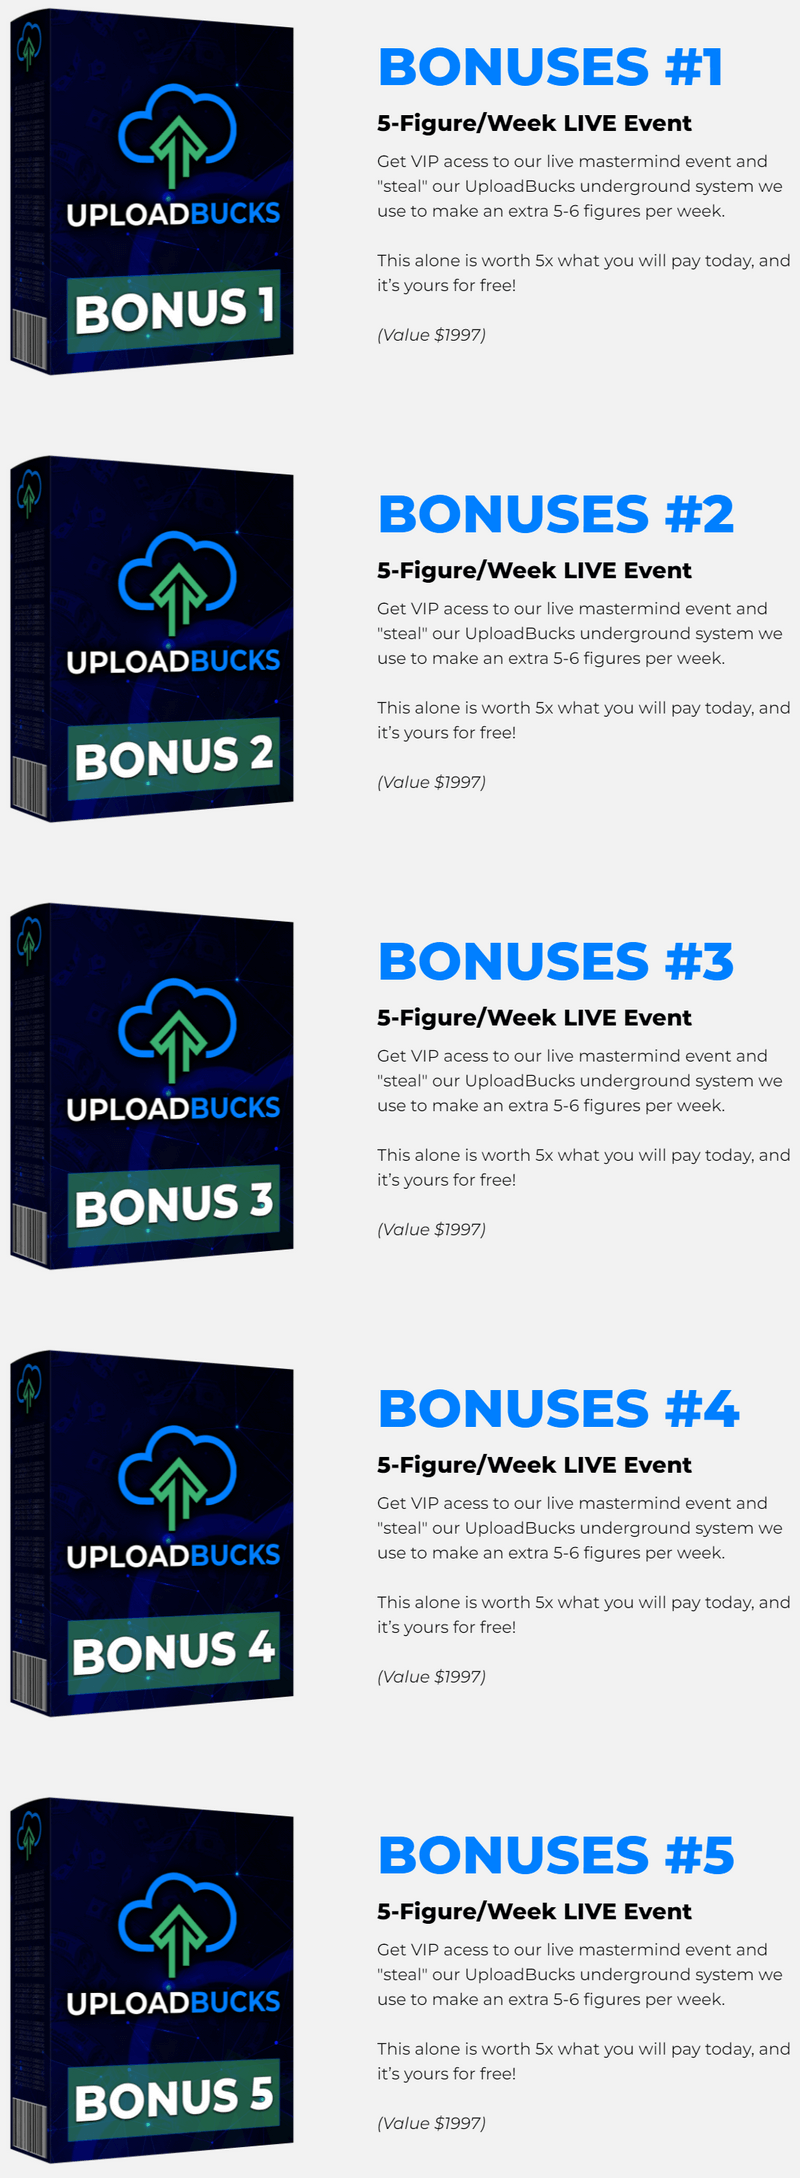 Upload-Bucks-bonus-1